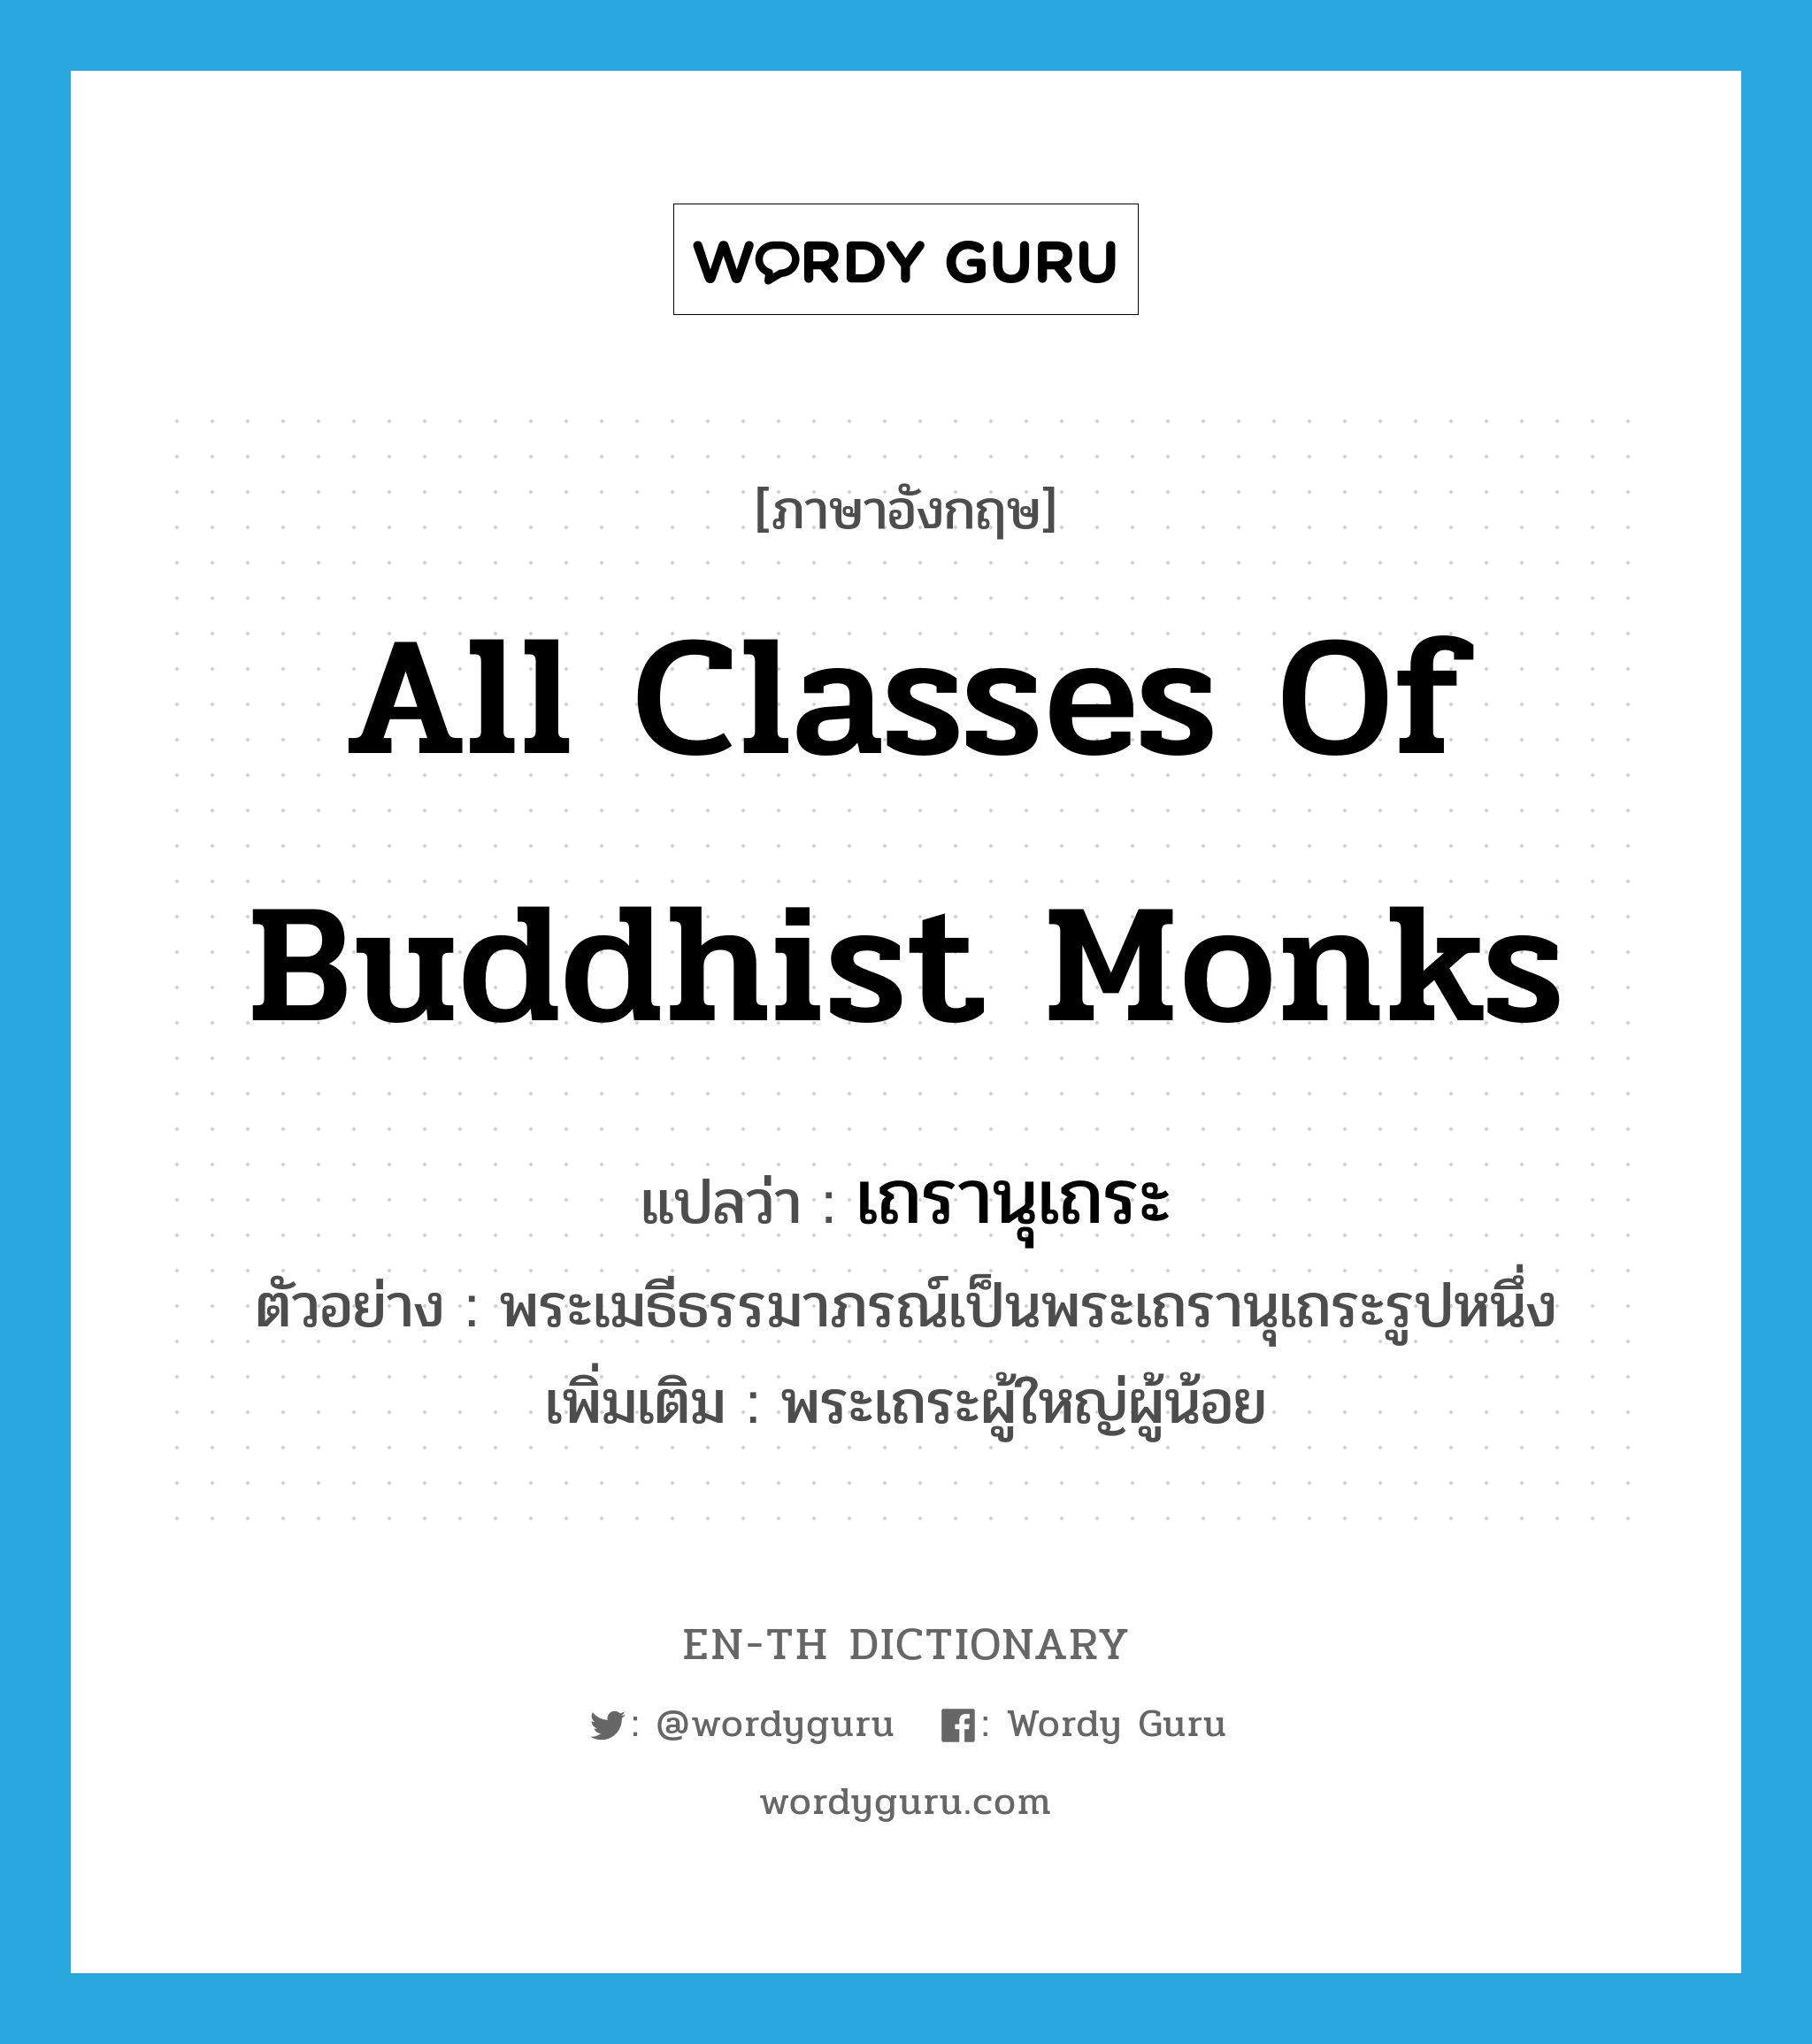 เถรานุเถระ ภาษาอังกฤษ?, คำศัพท์ภาษาอังกฤษ เถรานุเถระ แปลว่า all classes of Buddhist monks ประเภท N ตัวอย่าง พระเมธีธรรมาภรณ์เป็นพระเถรานุเถระรูปหนึ่ง เพิ่มเติม พระเถระผู้ใหญ่ผู้น้อย หมวด N